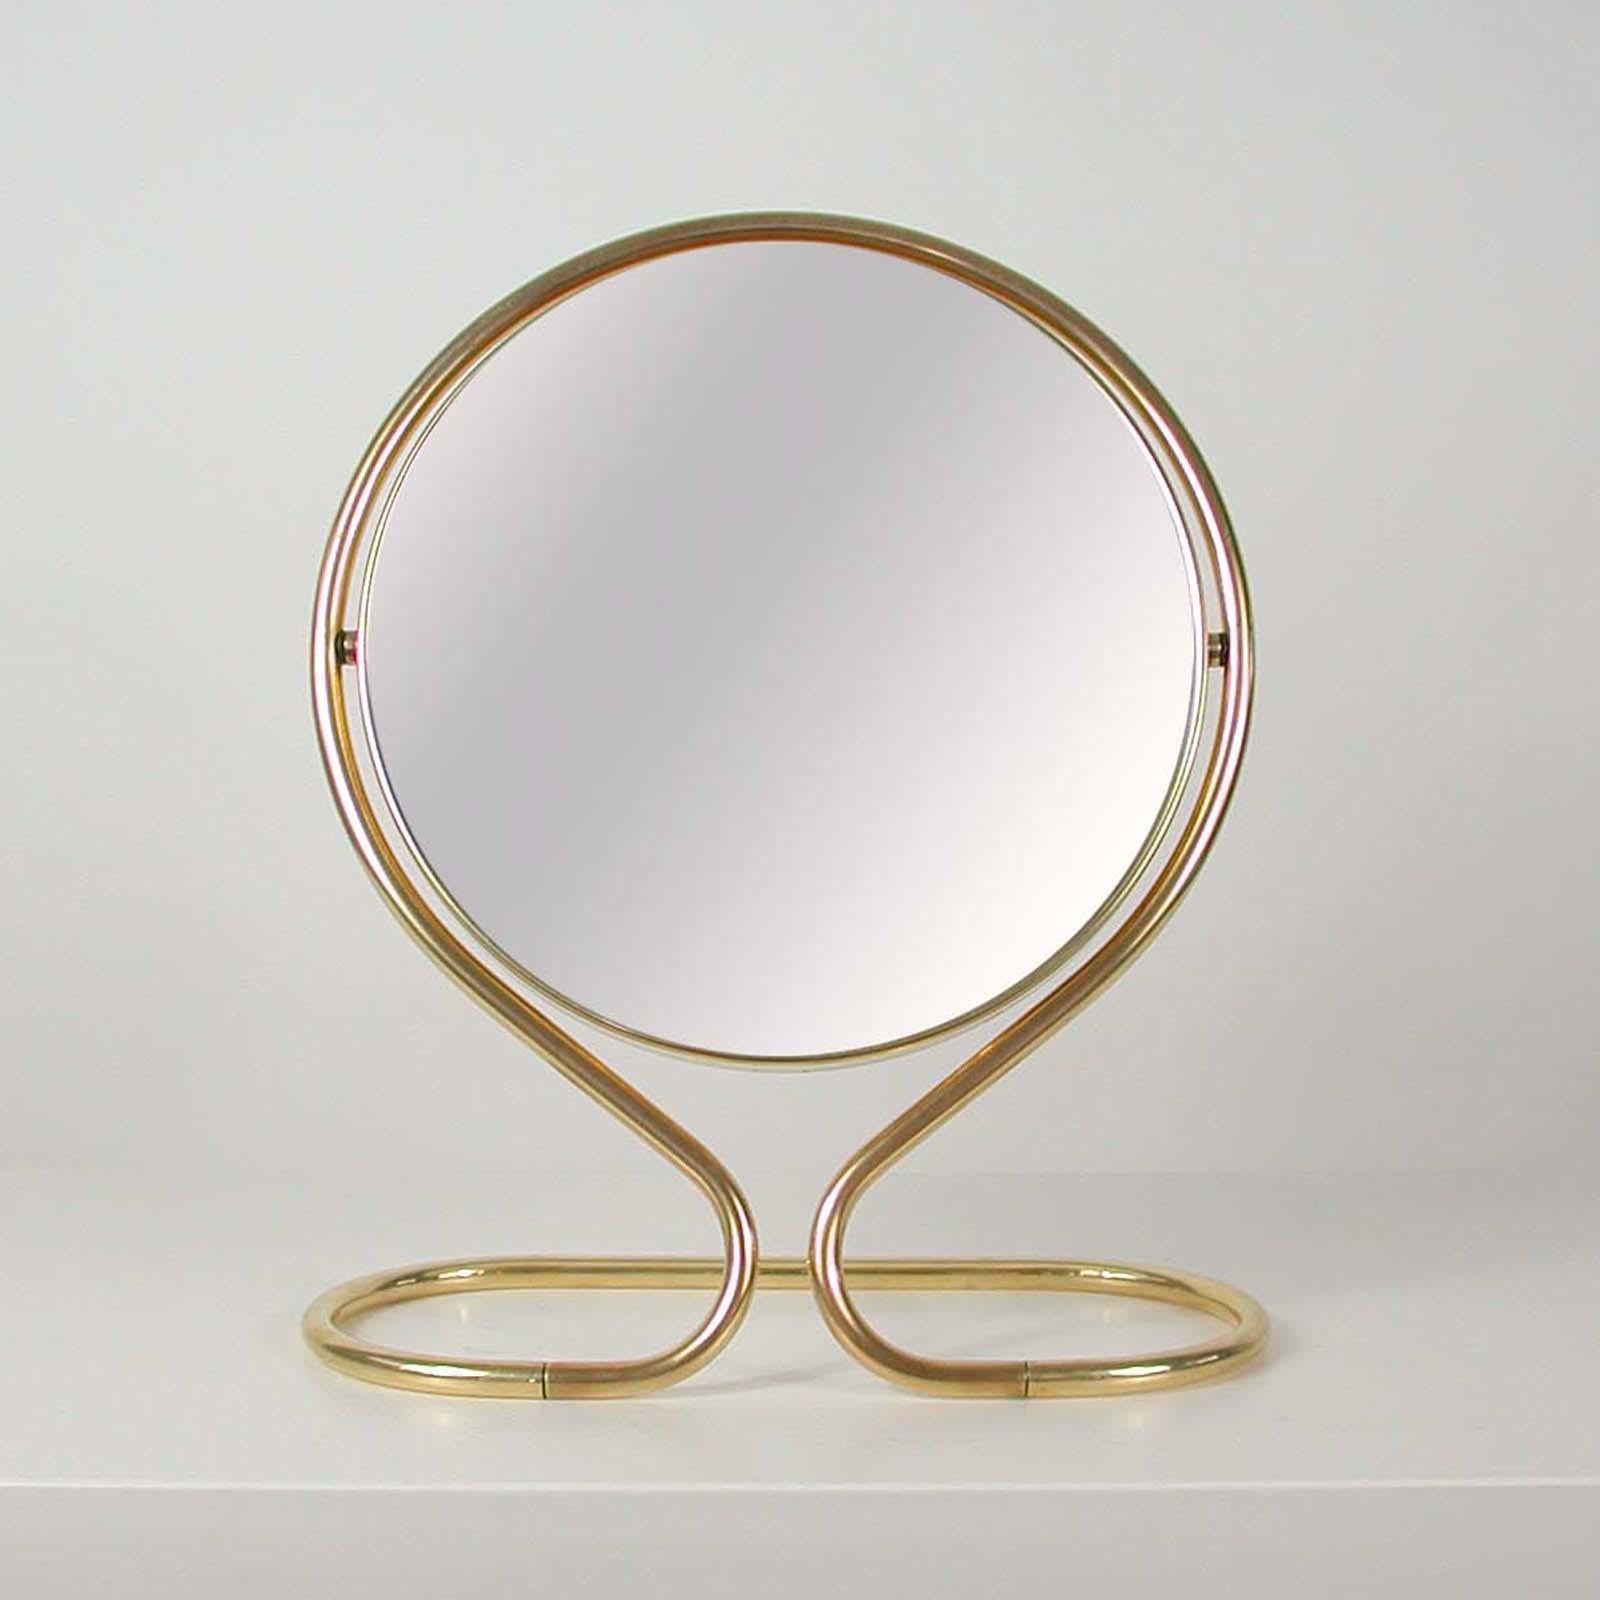 Mid-20th Century Italian Midcentury Double Sided Brass Vanity Table Mirror, 1950s